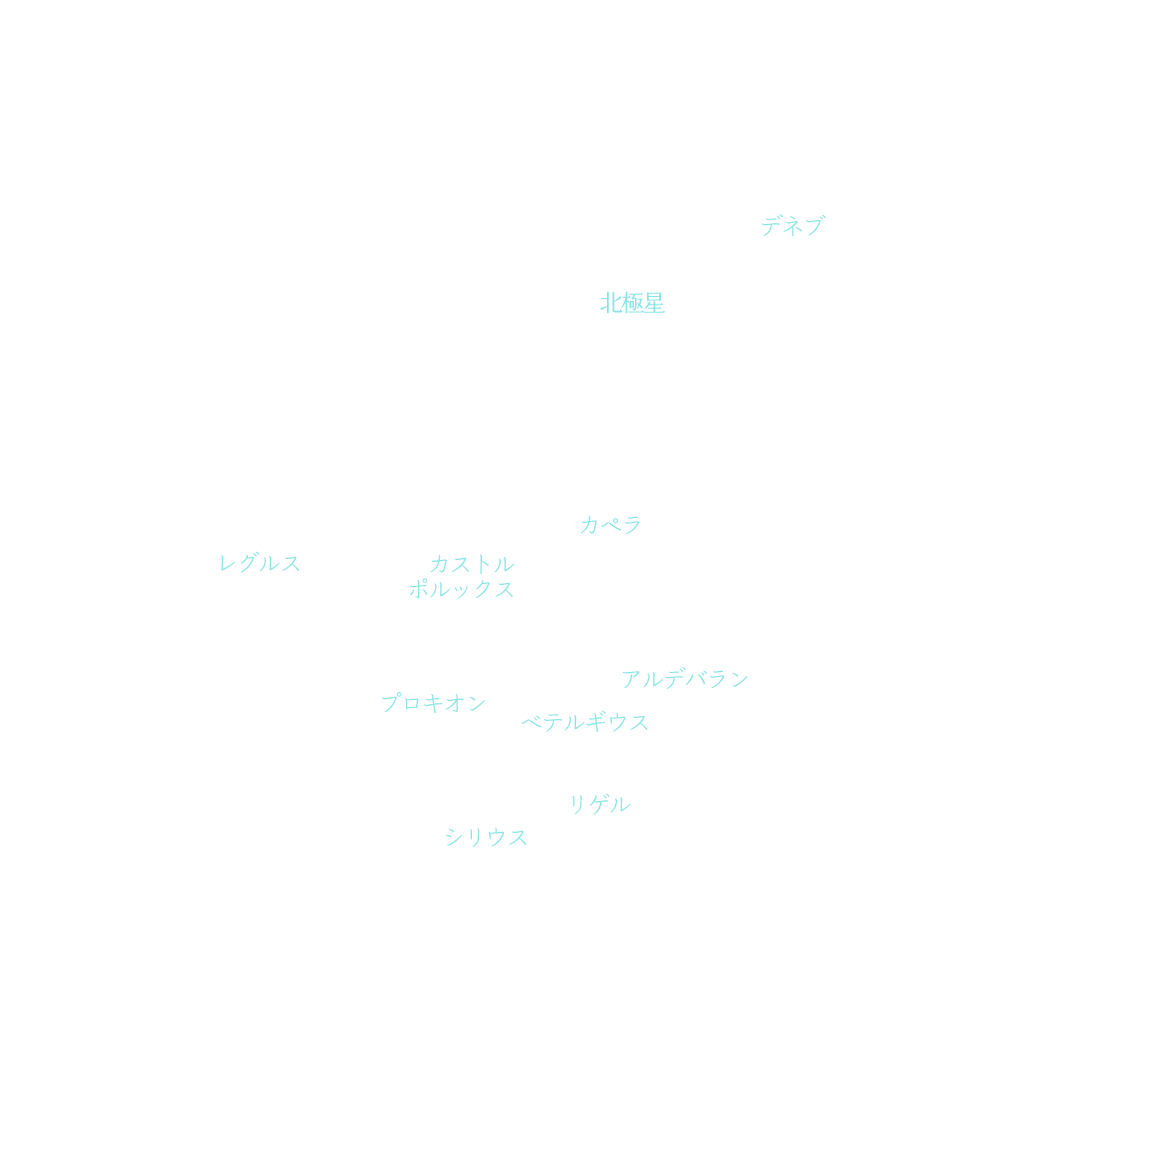 冬の星座恒星名を表示した画像